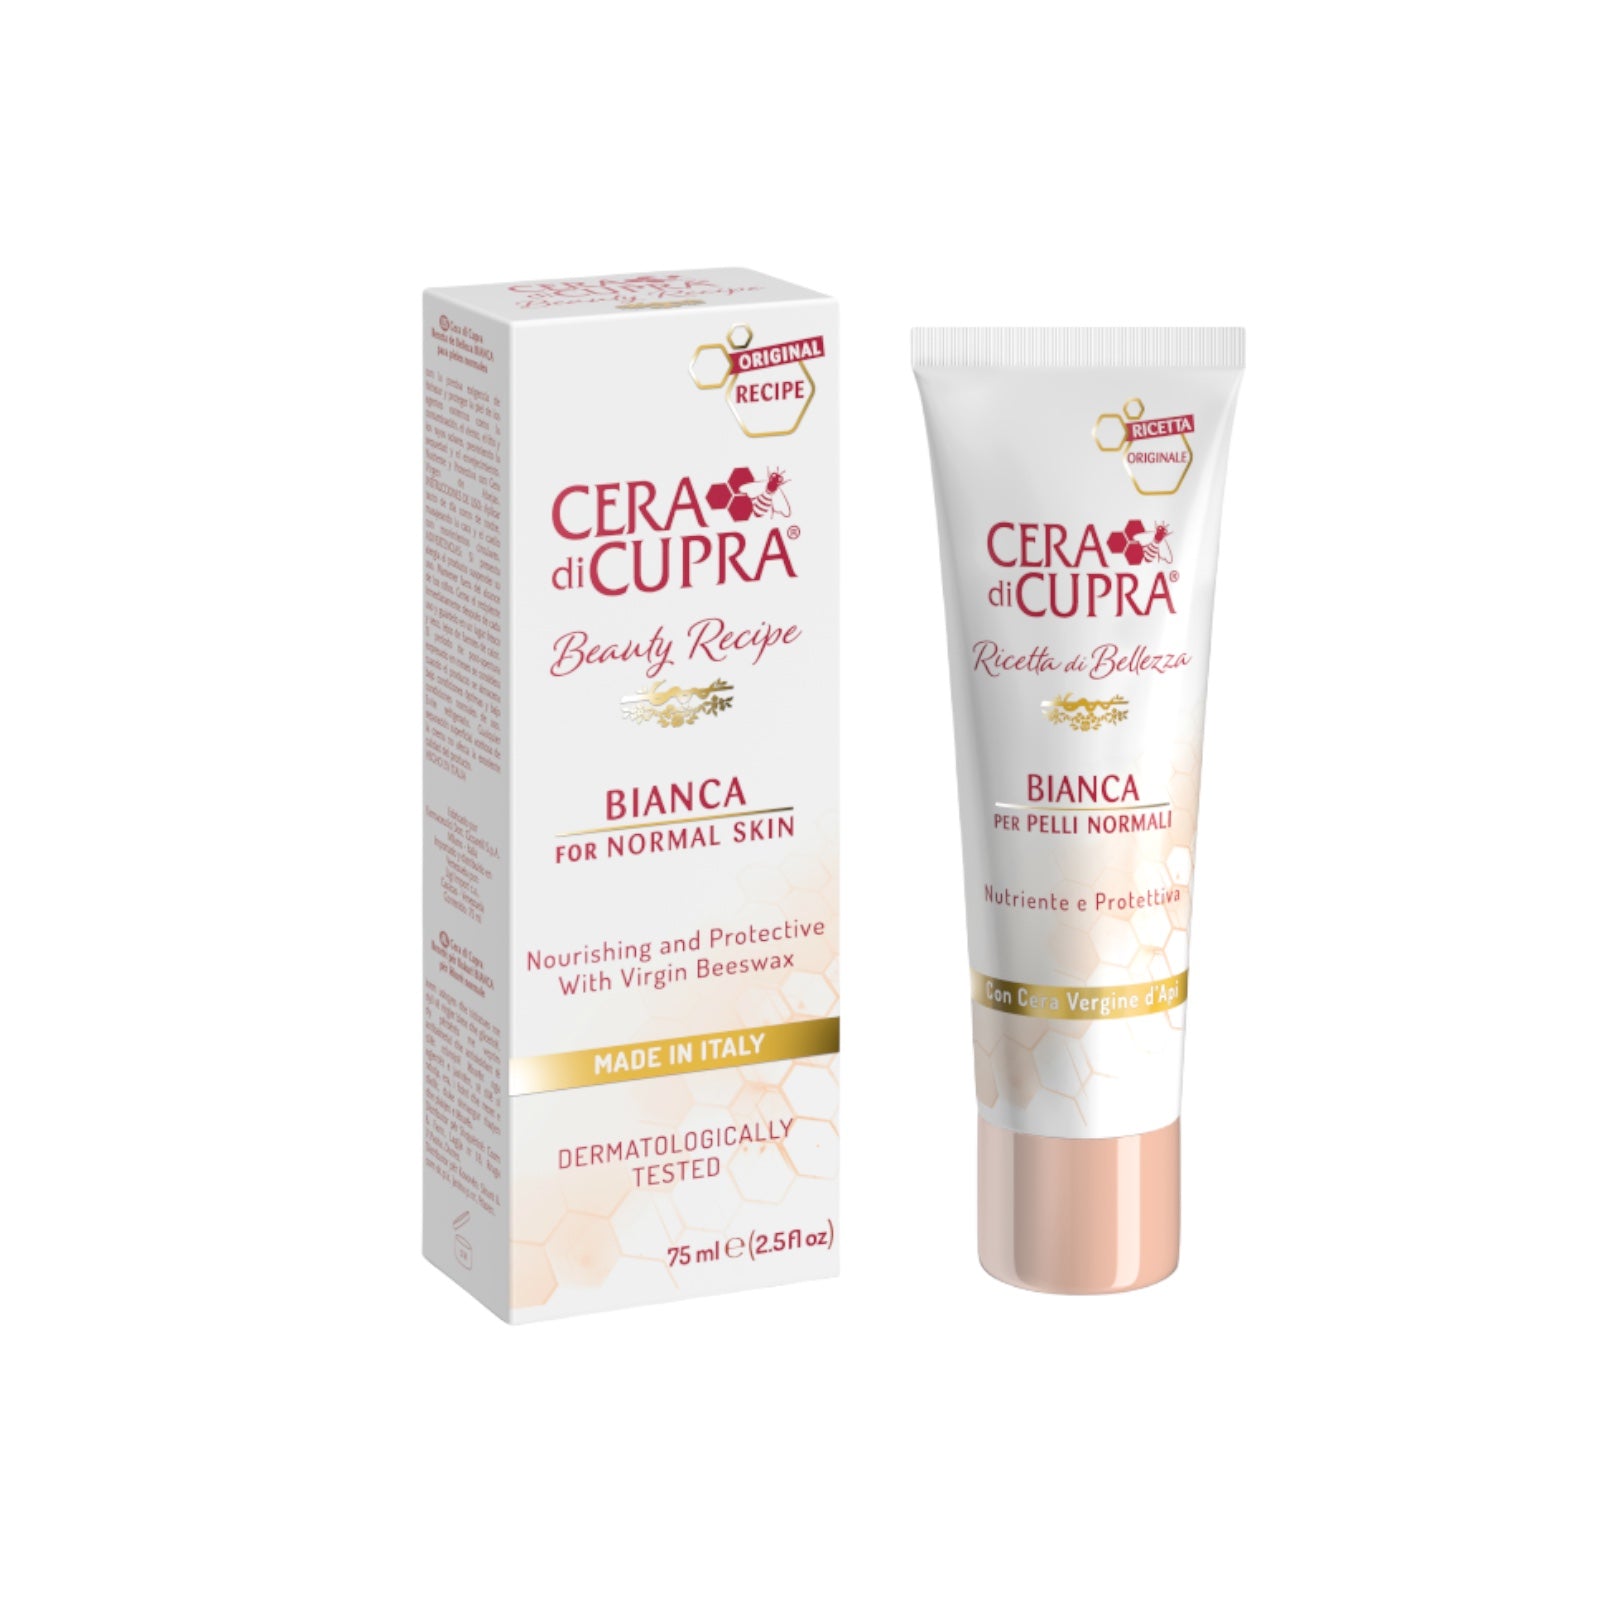 Cera di Cupra"Bianca per Pelli Normali" Cream for Normal Skin, Anti-age Formula - 2.5 Fluid Ounces (75ml)